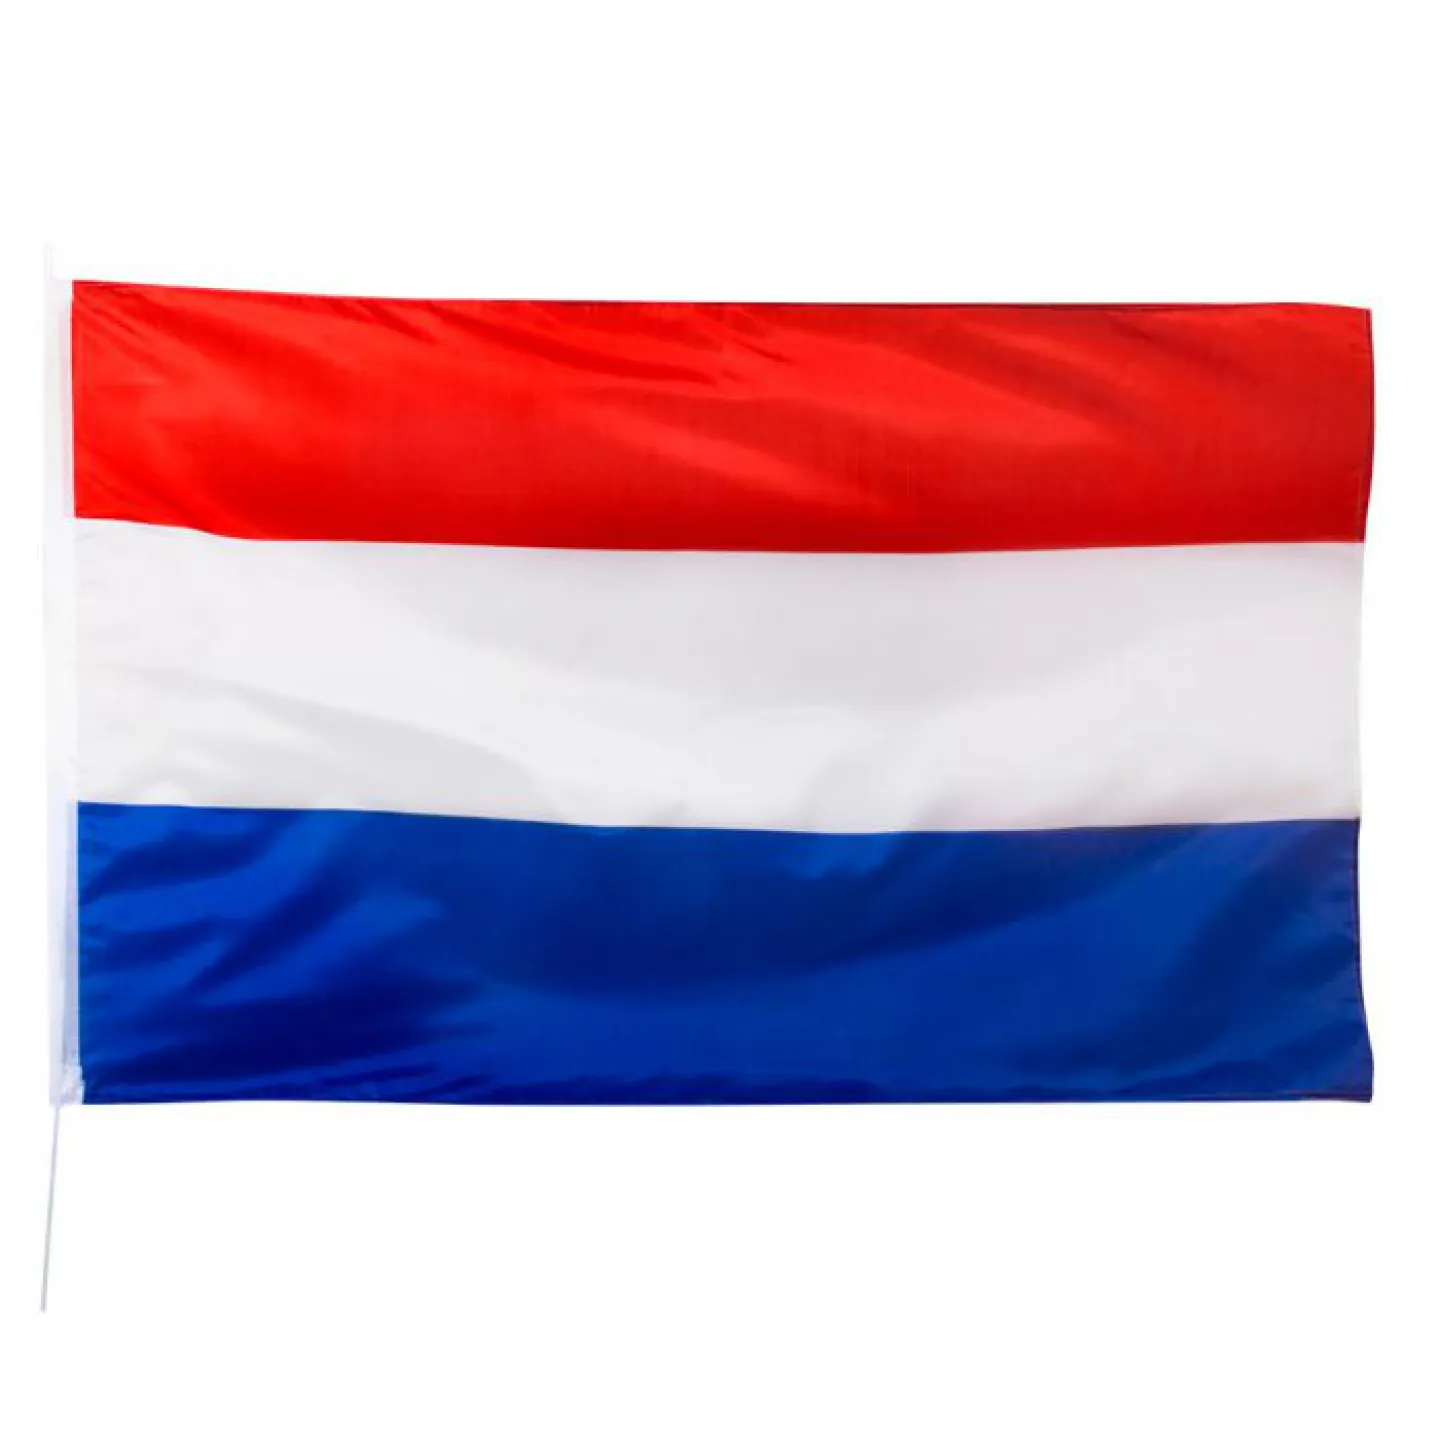 Nederlandse vlag kopen.